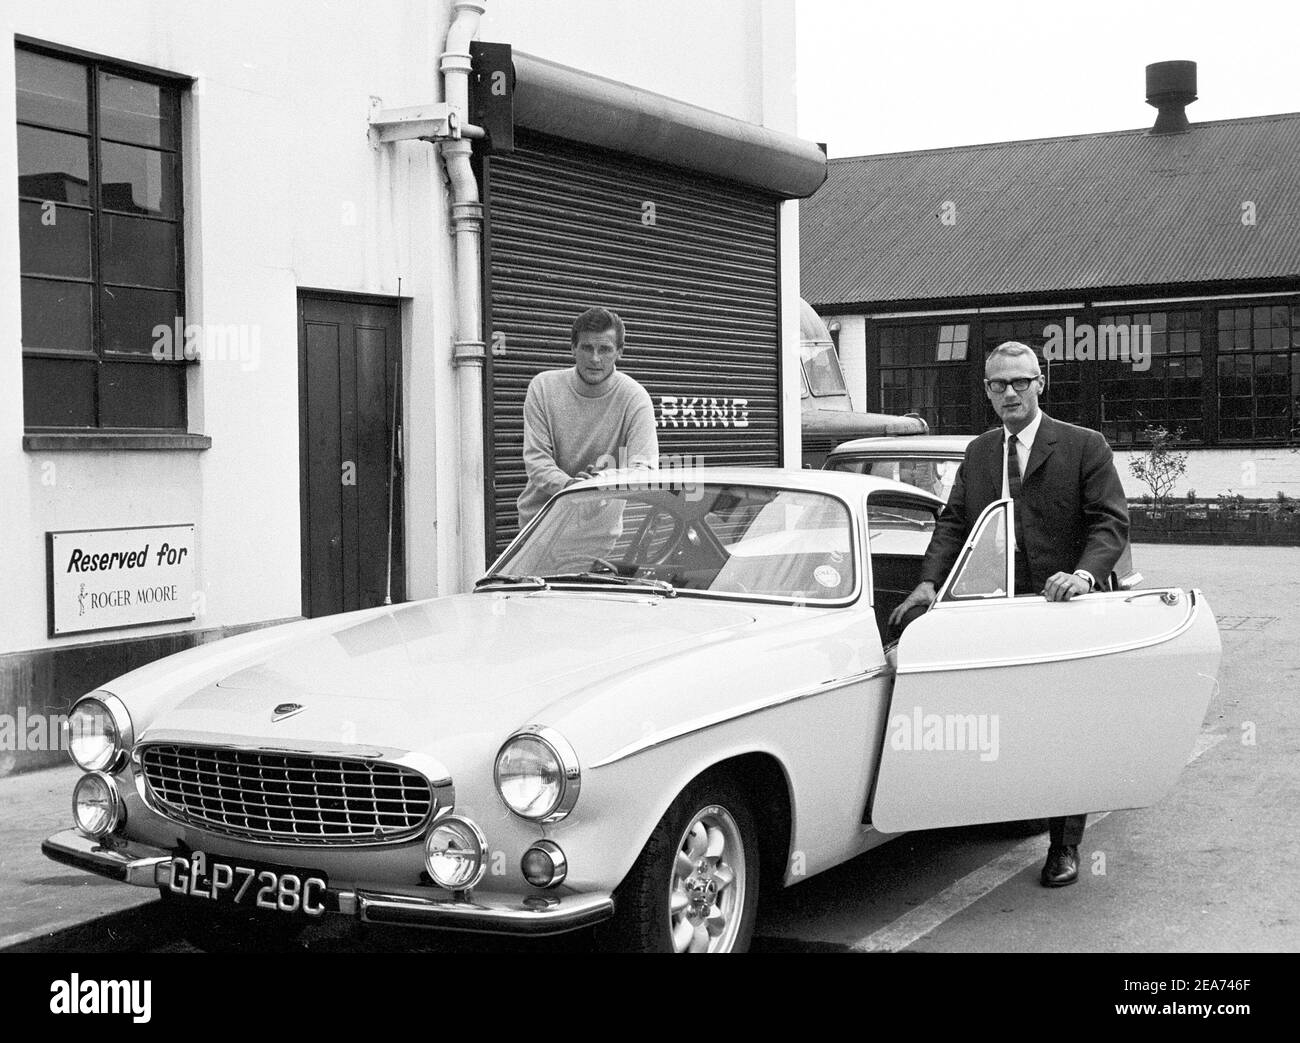 Volvo P1800. Ein Sportwagen von Volvo Cars mit Produktionsstart 1961 bis Ende 1973. Styling wurde von der schwedischen Designerin Pelle Pettersson. Der Wagen wurde 1961 auf dem Genfer Autosalon vorgestellt. Das Modell P1800 verkaufte 47492 Autos.der P1800 wurde weithin bekannt, als er von dem damaligen zukünftigen James Bond Schauspieler Roger Moore als Simon Templar in der Fernsehserie The Saint gefahren wurde. Im Bild Sir Roger Moore , 1927-2017 während der Dreharbeiten zur tv-Serie The Saint, posiert mit einem Volvo P1800 zusammen mit dem schwedischen Medienmann Dennis Sjöberg. Der Heilige lief von 1962 für sechs Staffeln und 118 Episoden. 1966 Stockfoto